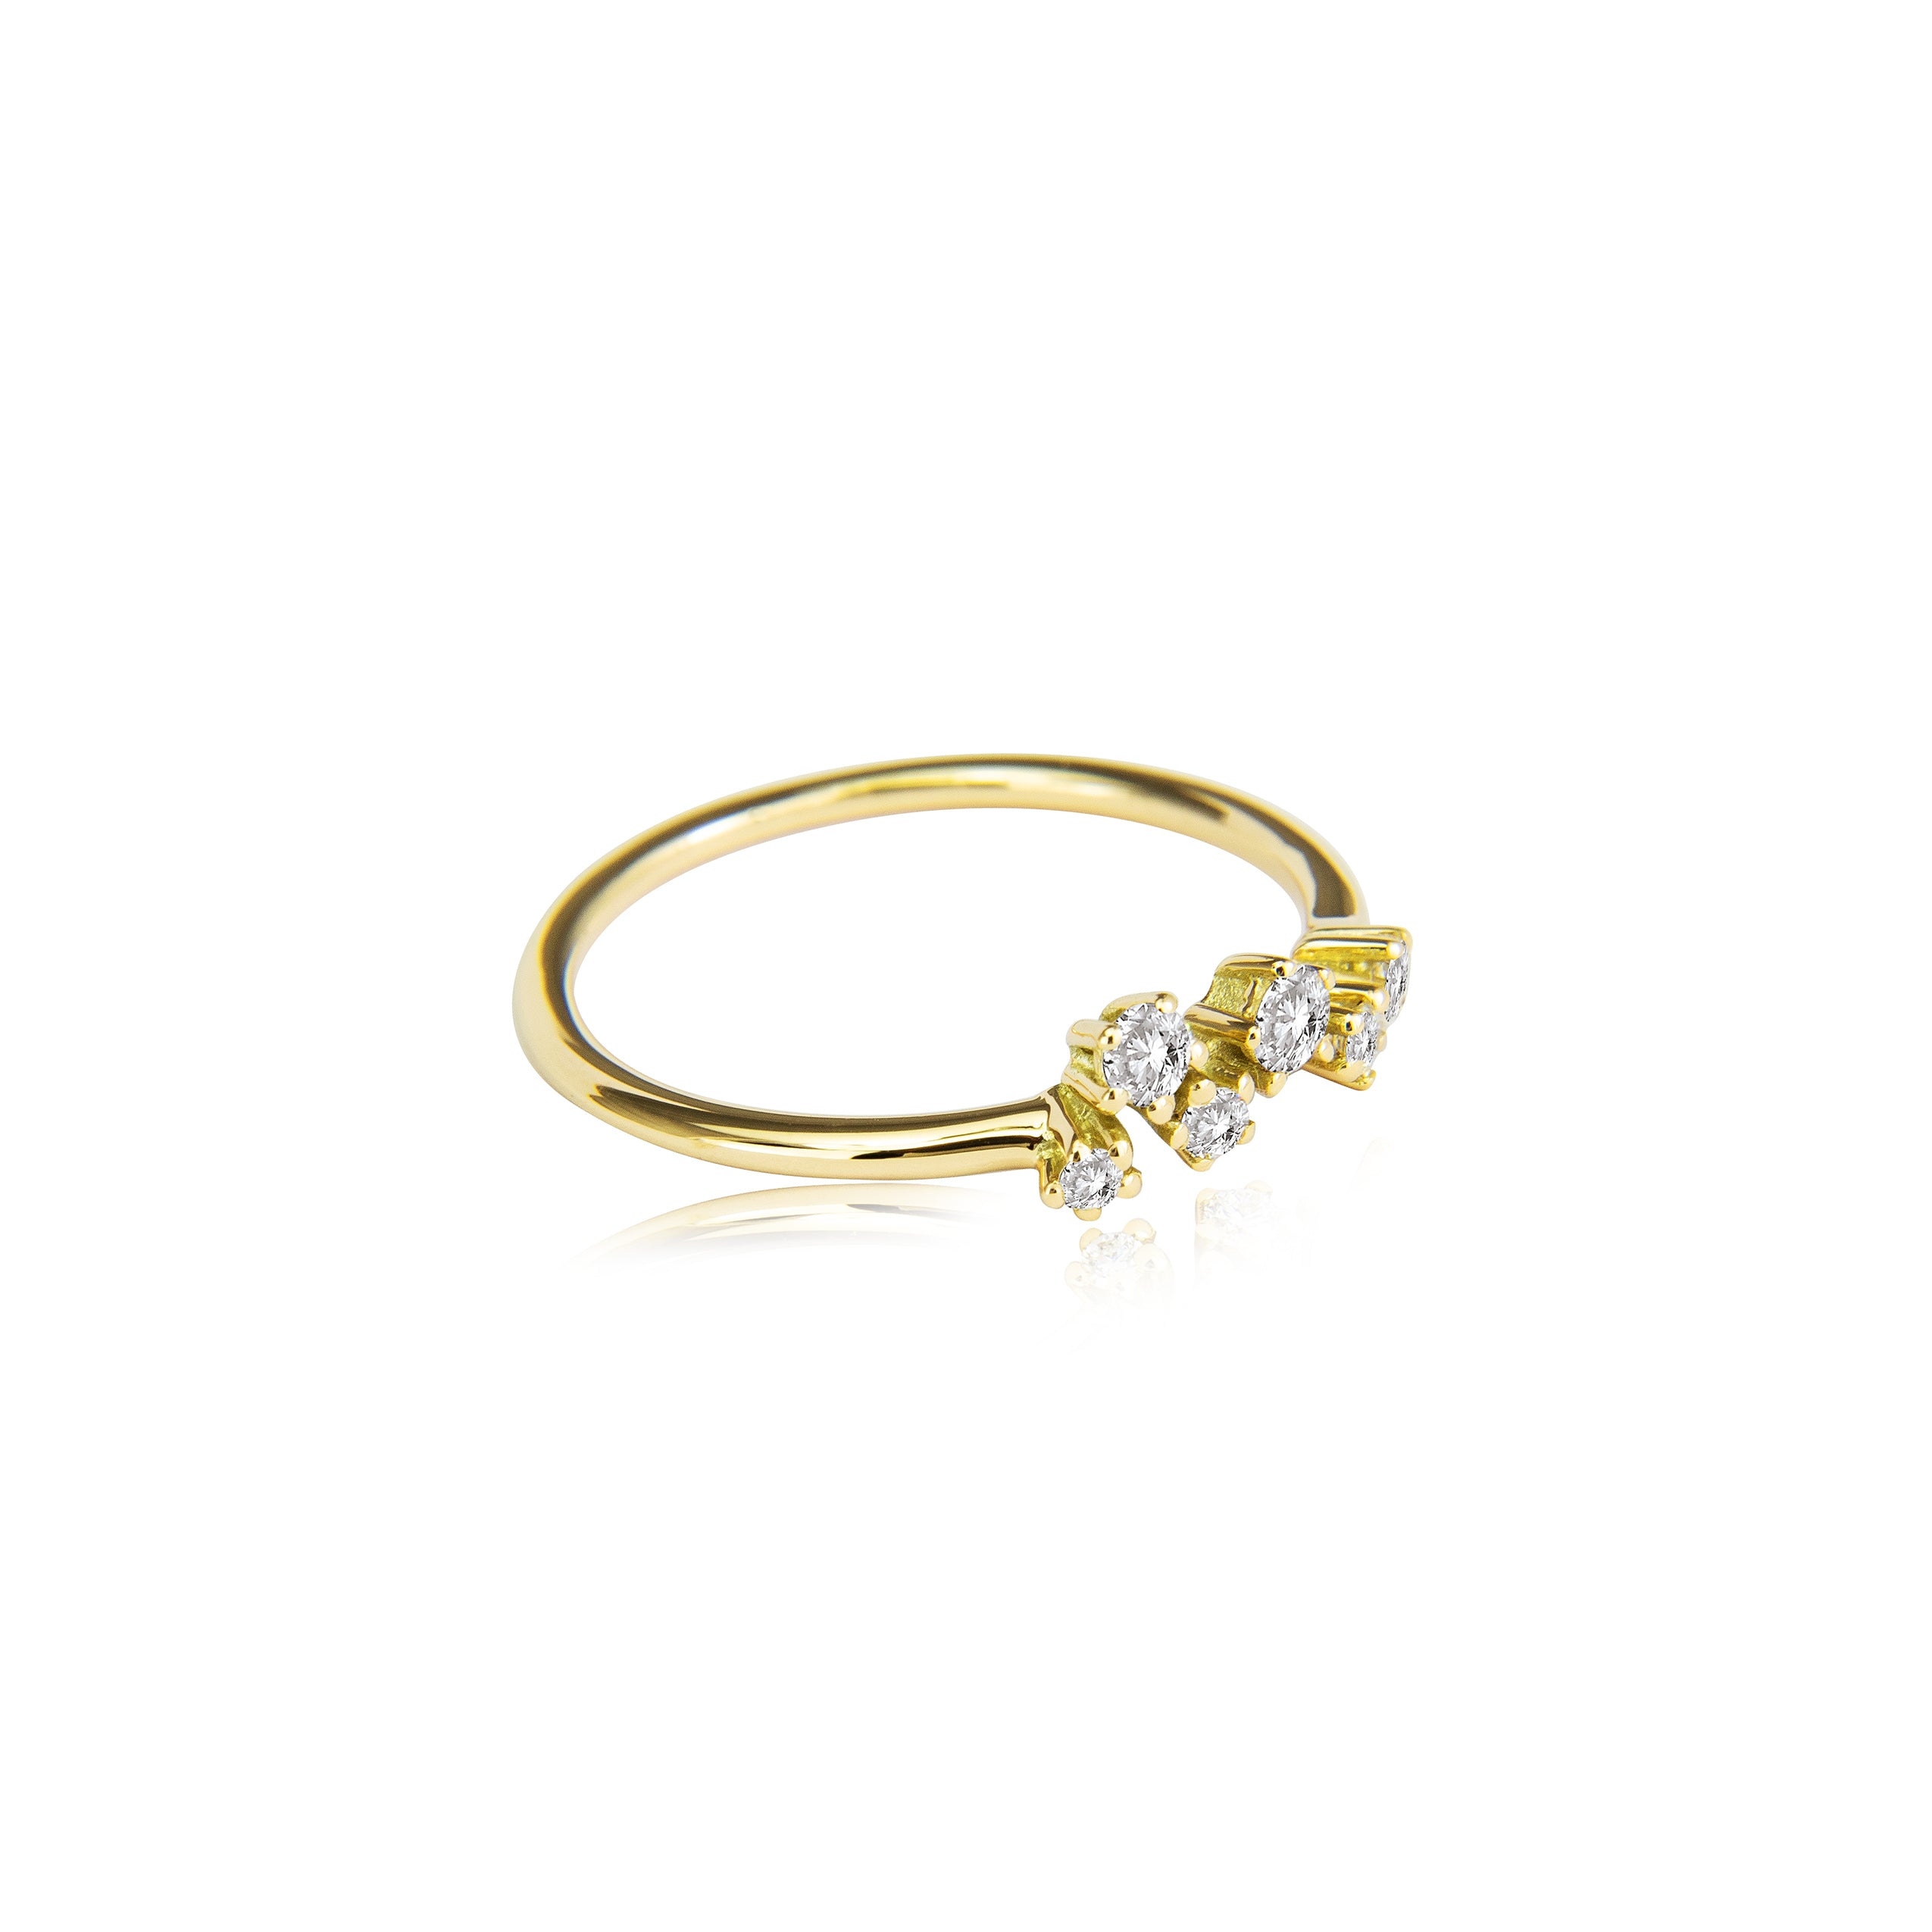 Fonkelende ring "medium" in 585/- goud met 6 diamanten